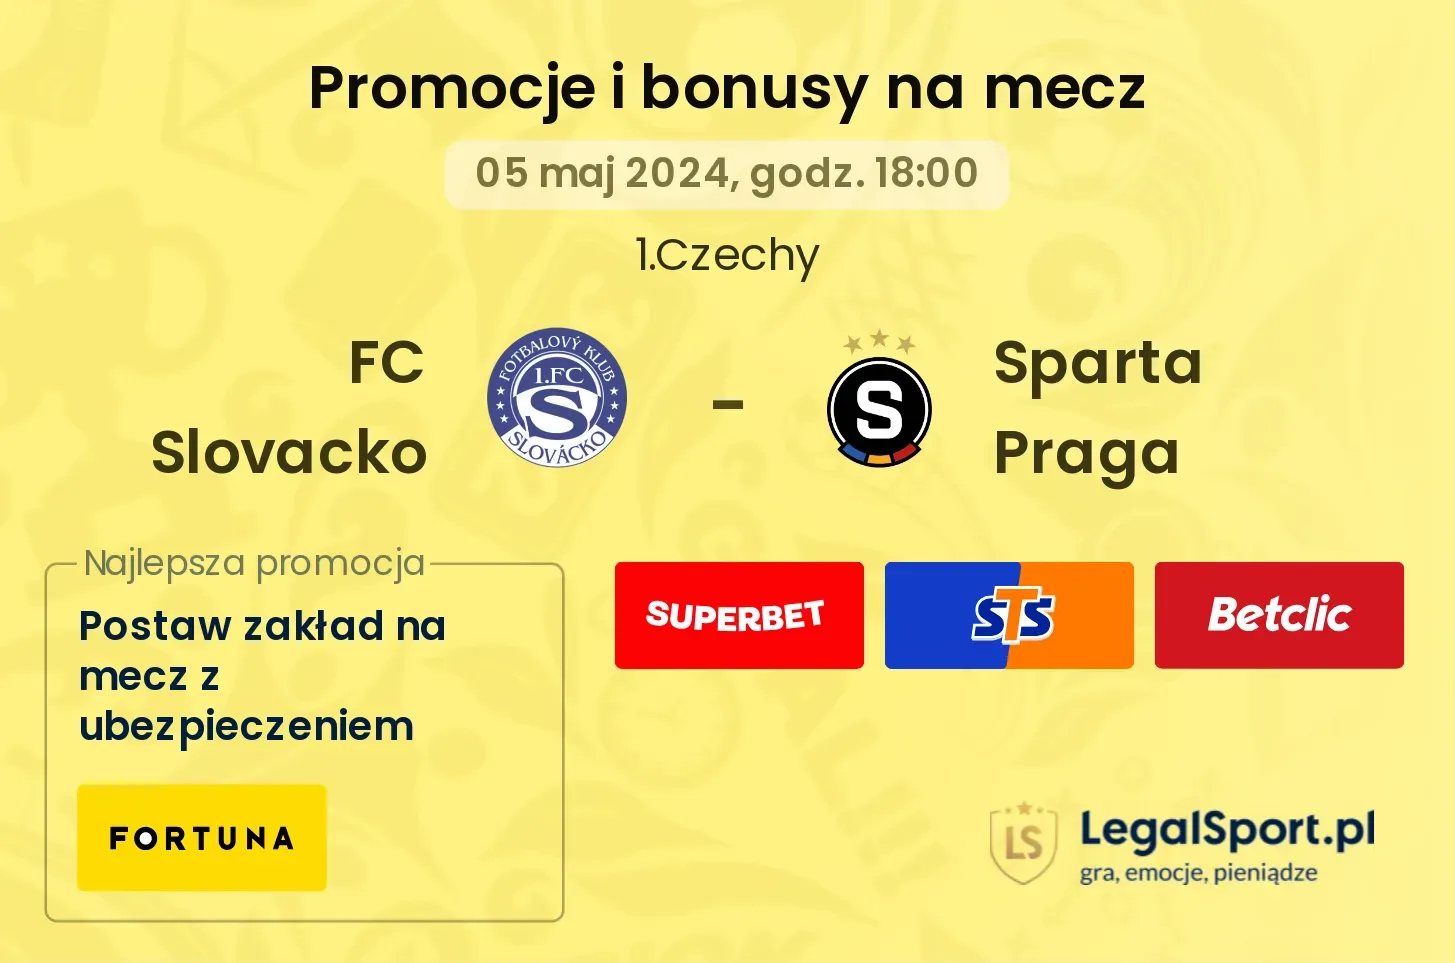 FC Slovacko - Sparta Praga promocje bonusy na mecz